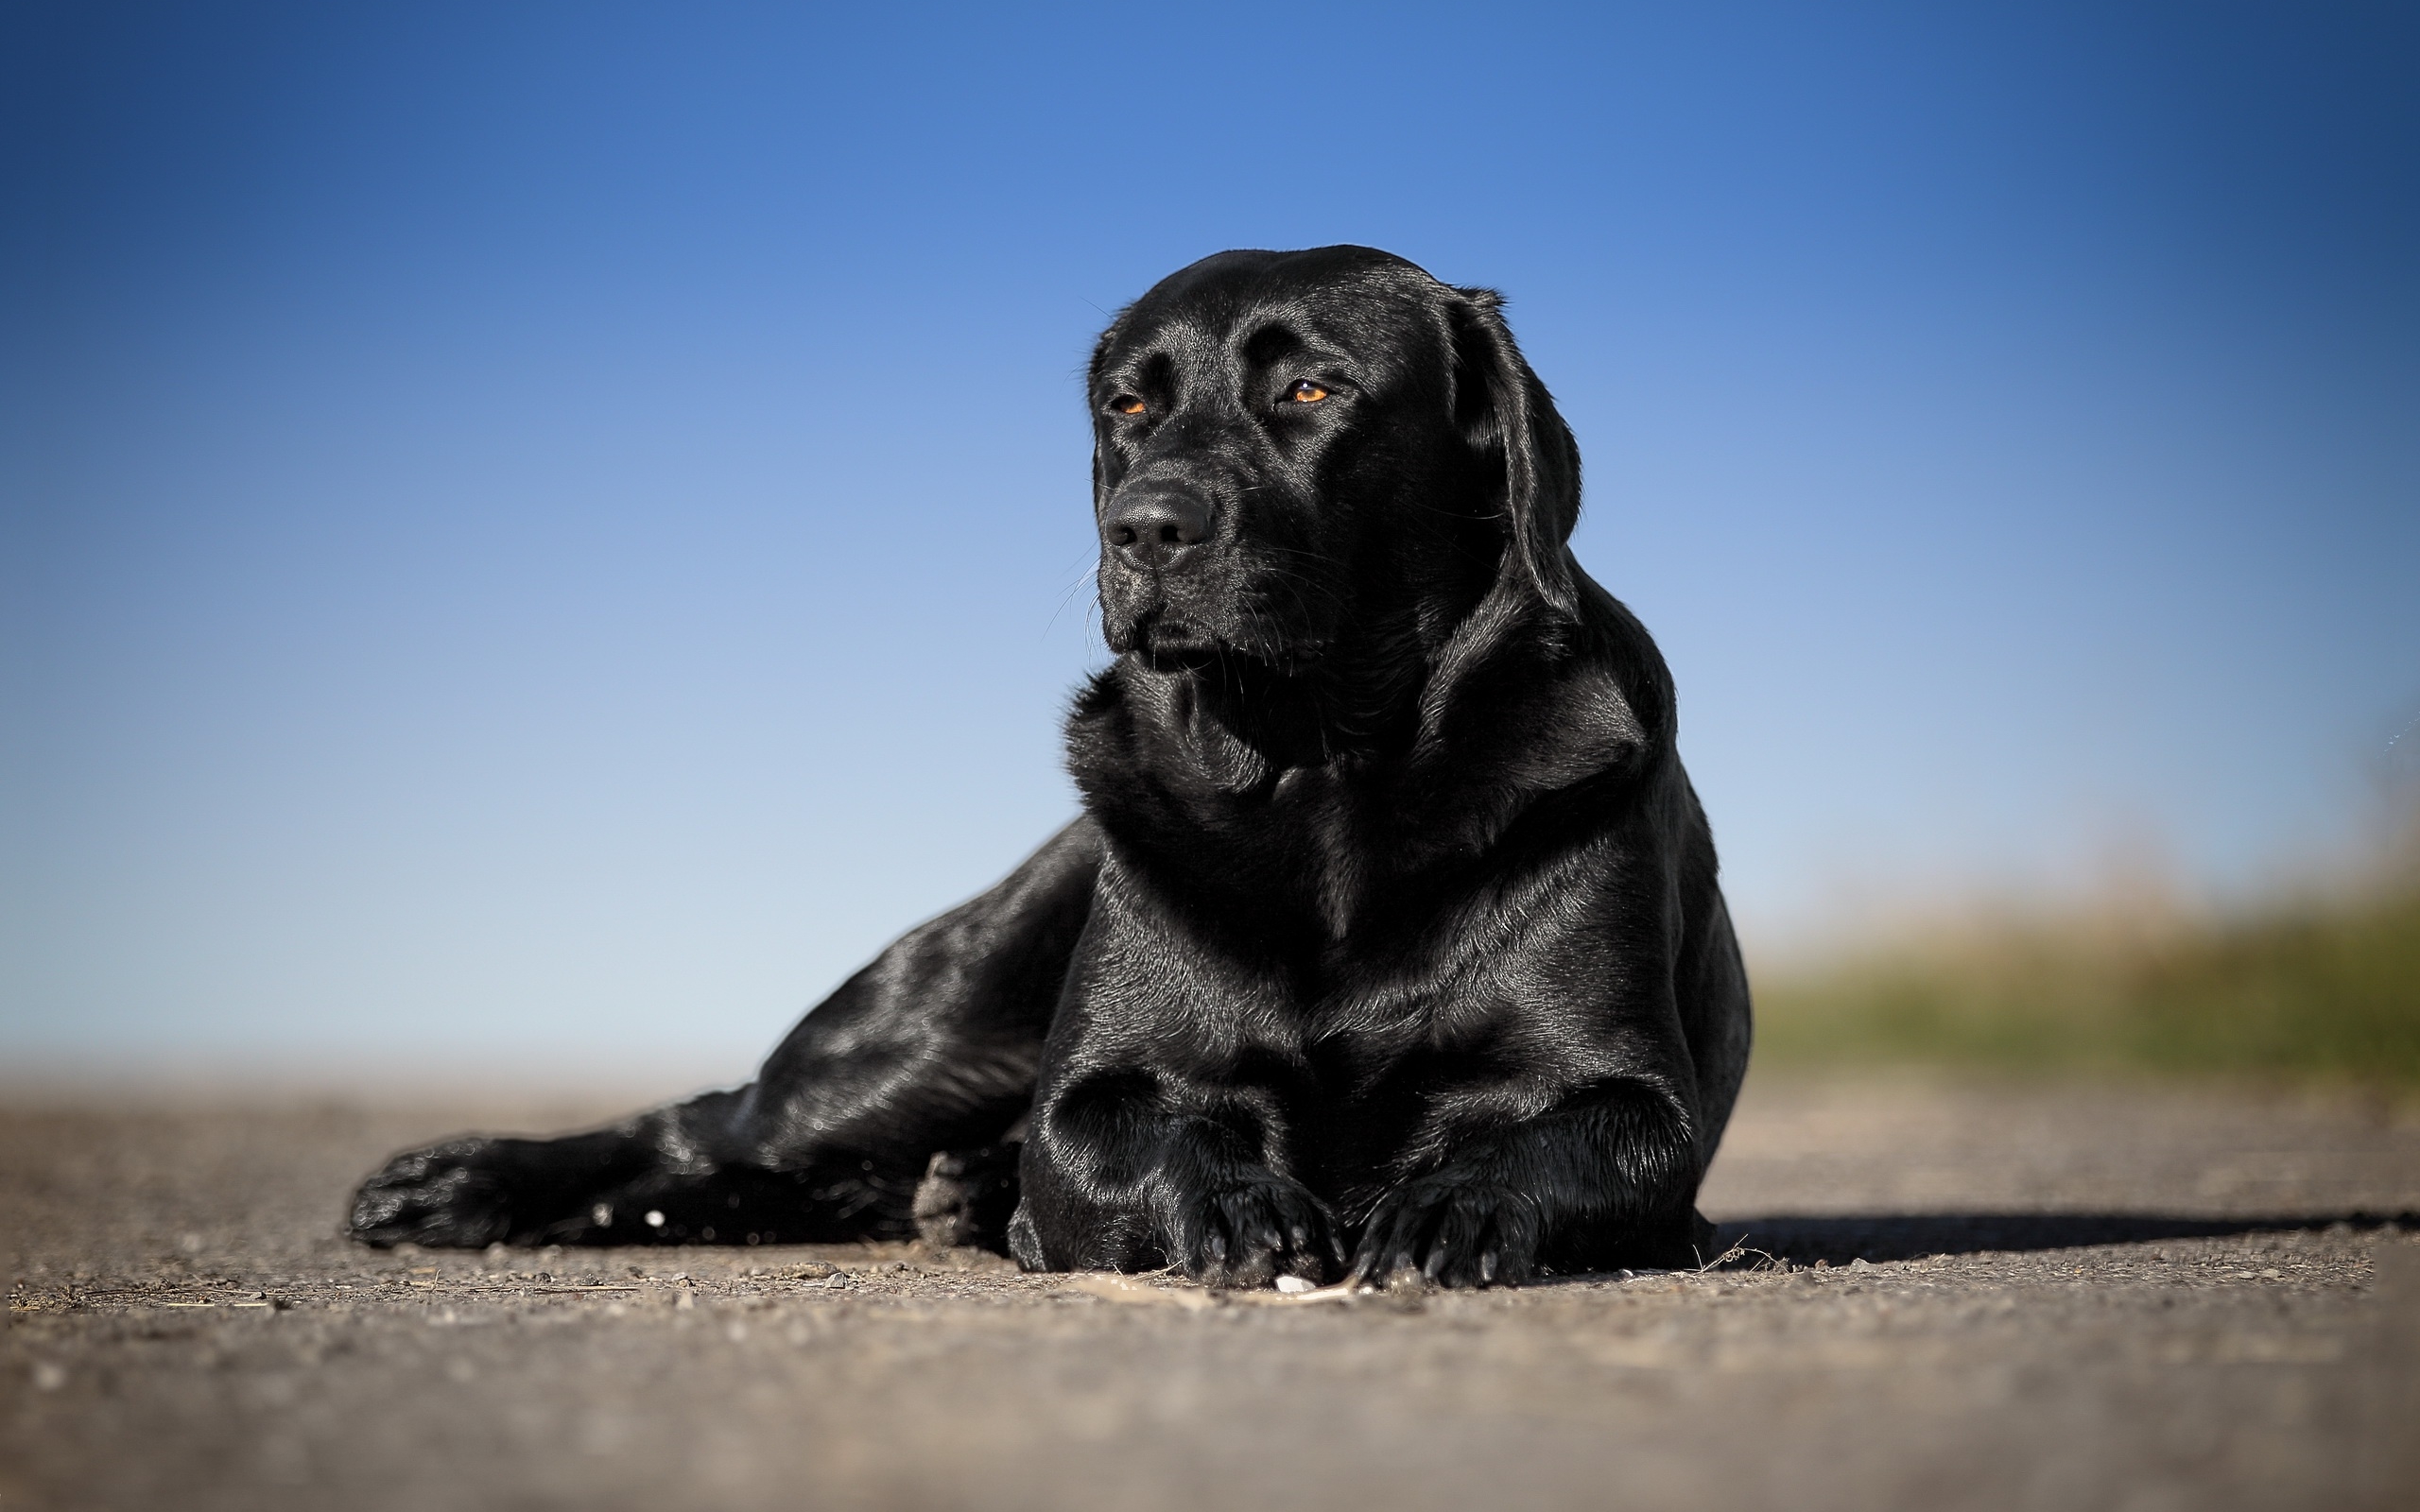 Black Labrador, Close-up, Retriever, Pets, Bokeh, Cute - Labrador Negro Fondos De Pantalla - HD Wallpaper 